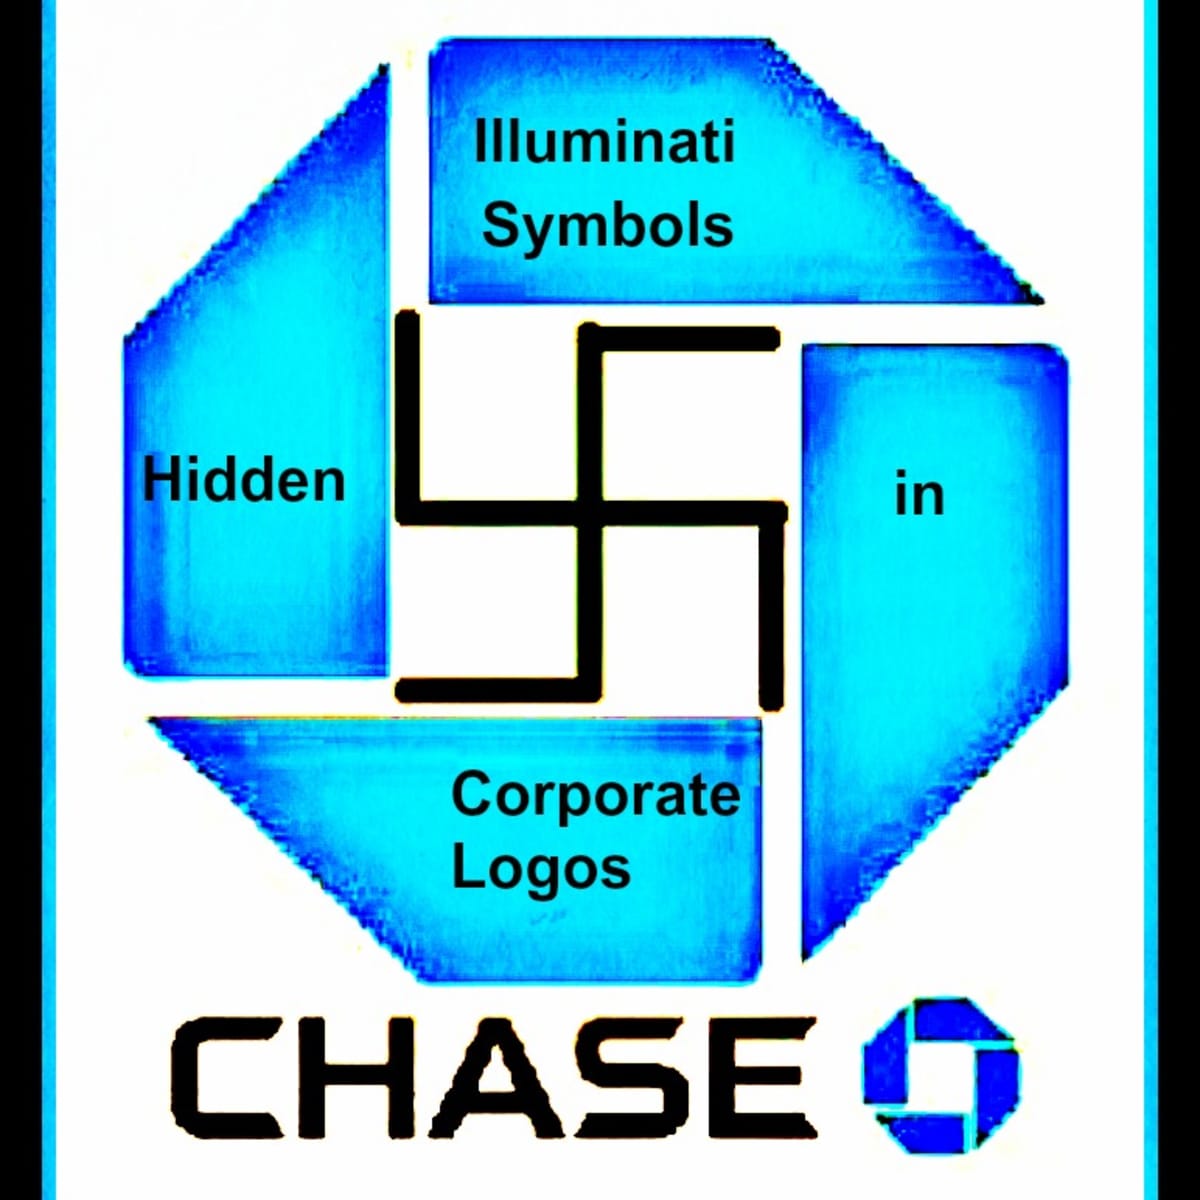 occult symbols in corporate logos